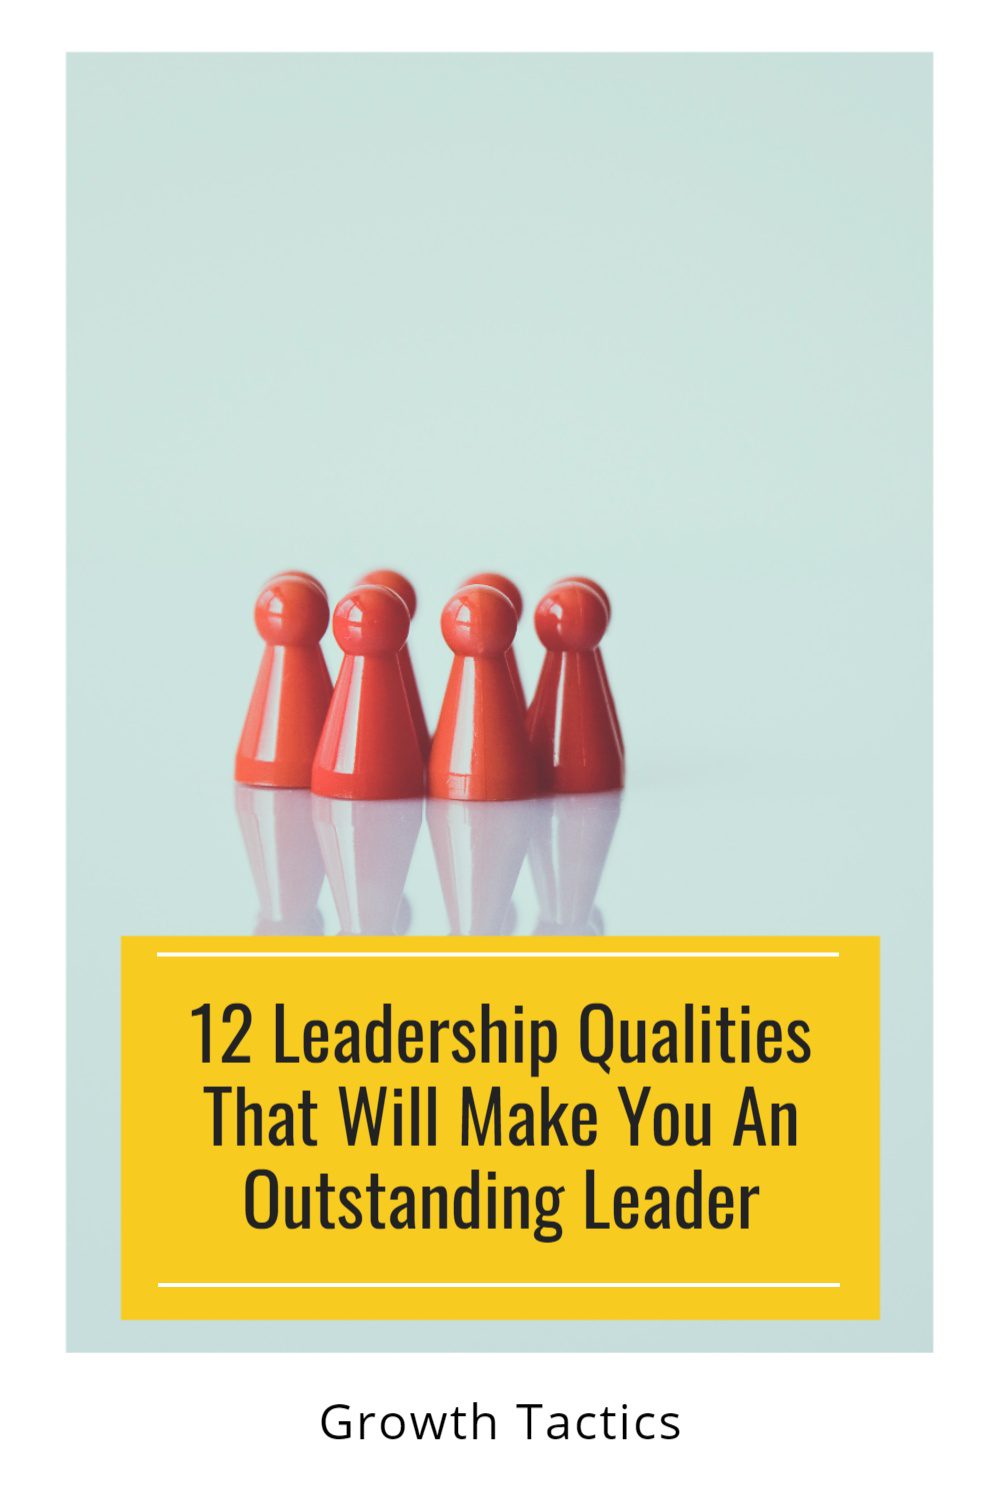 12 Top Leadership Qualities for Great Leaders